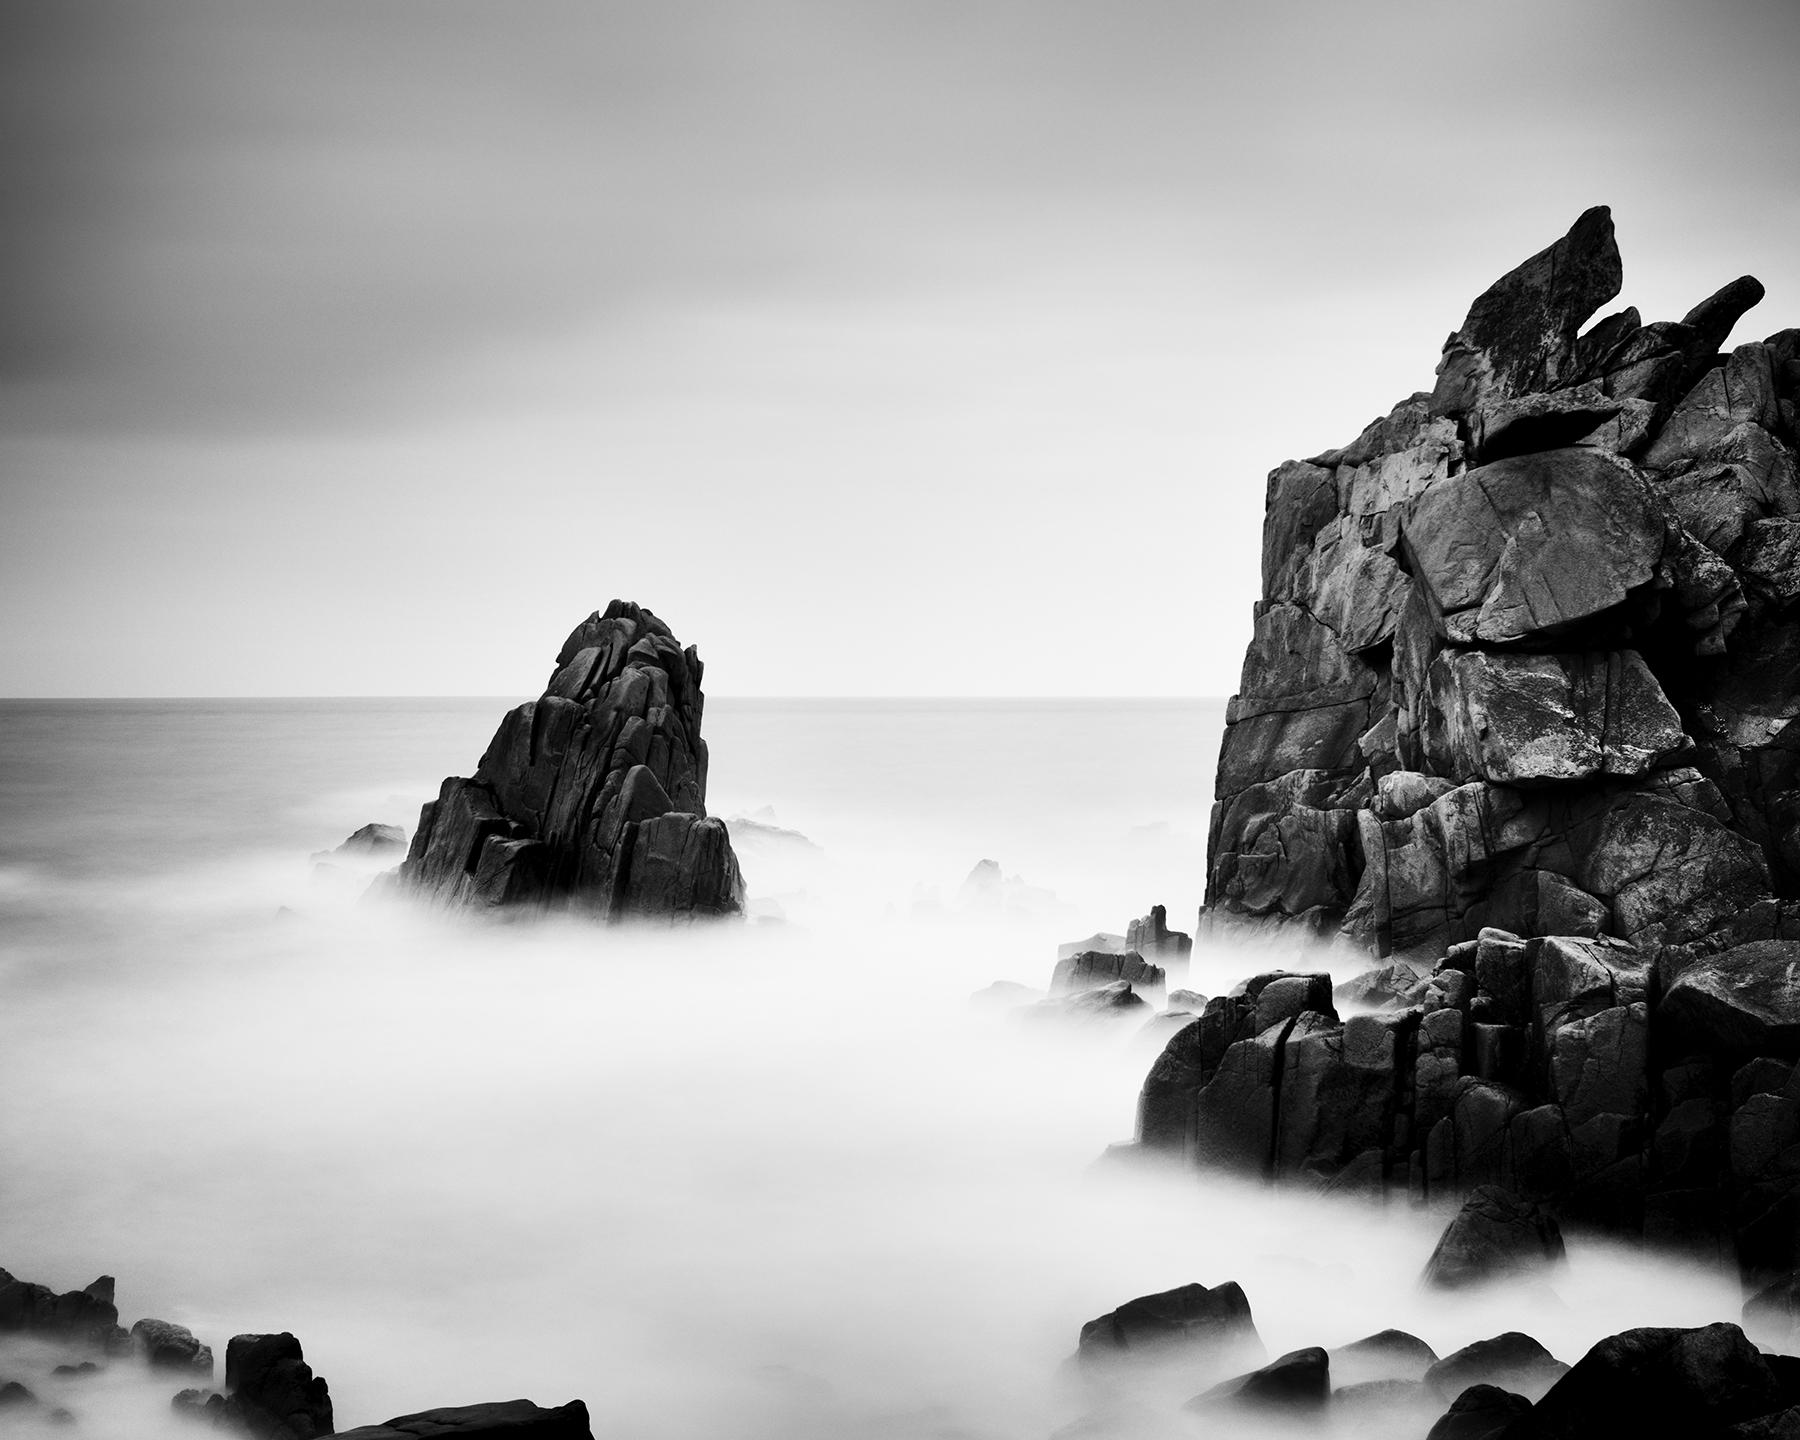 Rocky Stone Coast, France, long exposure, black & white photography, landscape